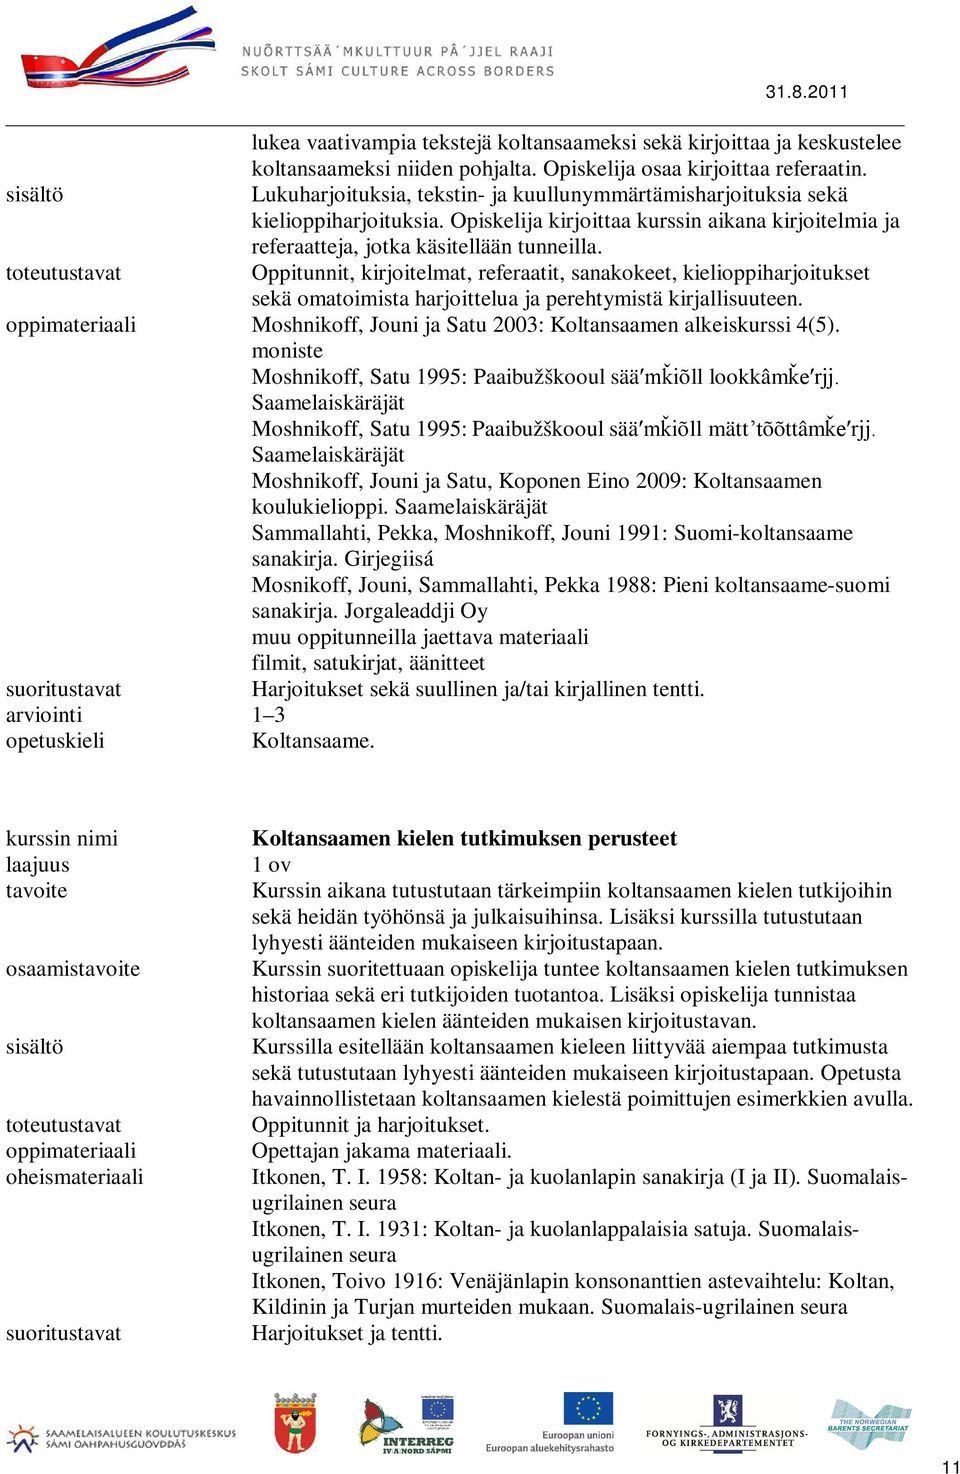 Oppitunnit, kirjoitelmat, referaatit, sanakokeet, kielioppiharjoitukset sekä omatoimista harjoittelua ja perehtymistä kirjallisuuteen. Moshnikoff, Jouni ja Satu 2003: Koltansaamen alkeiskurssi 4(5).